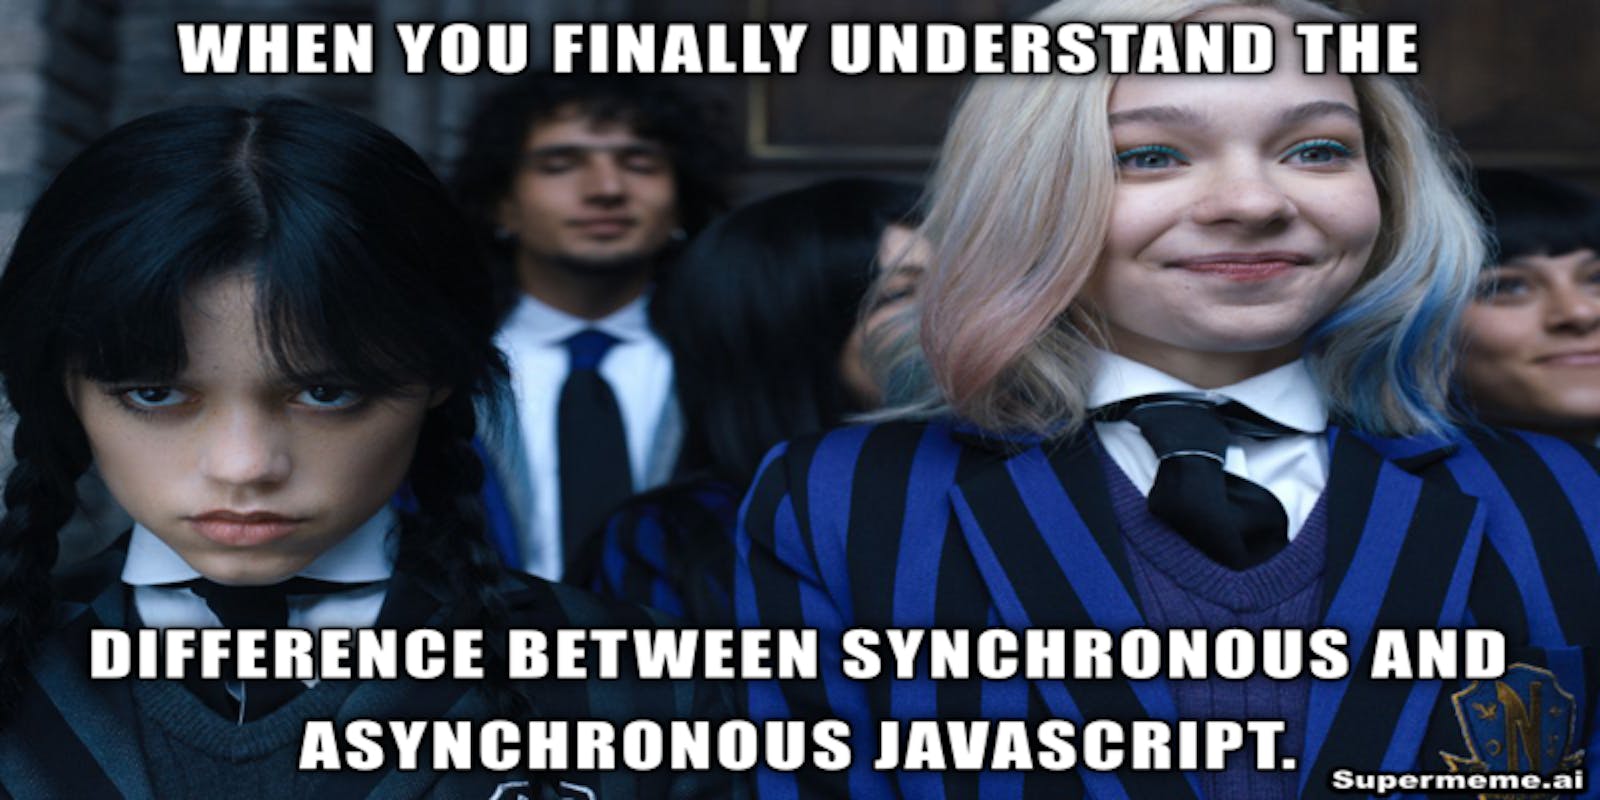 Synchronous vs Asynchronous